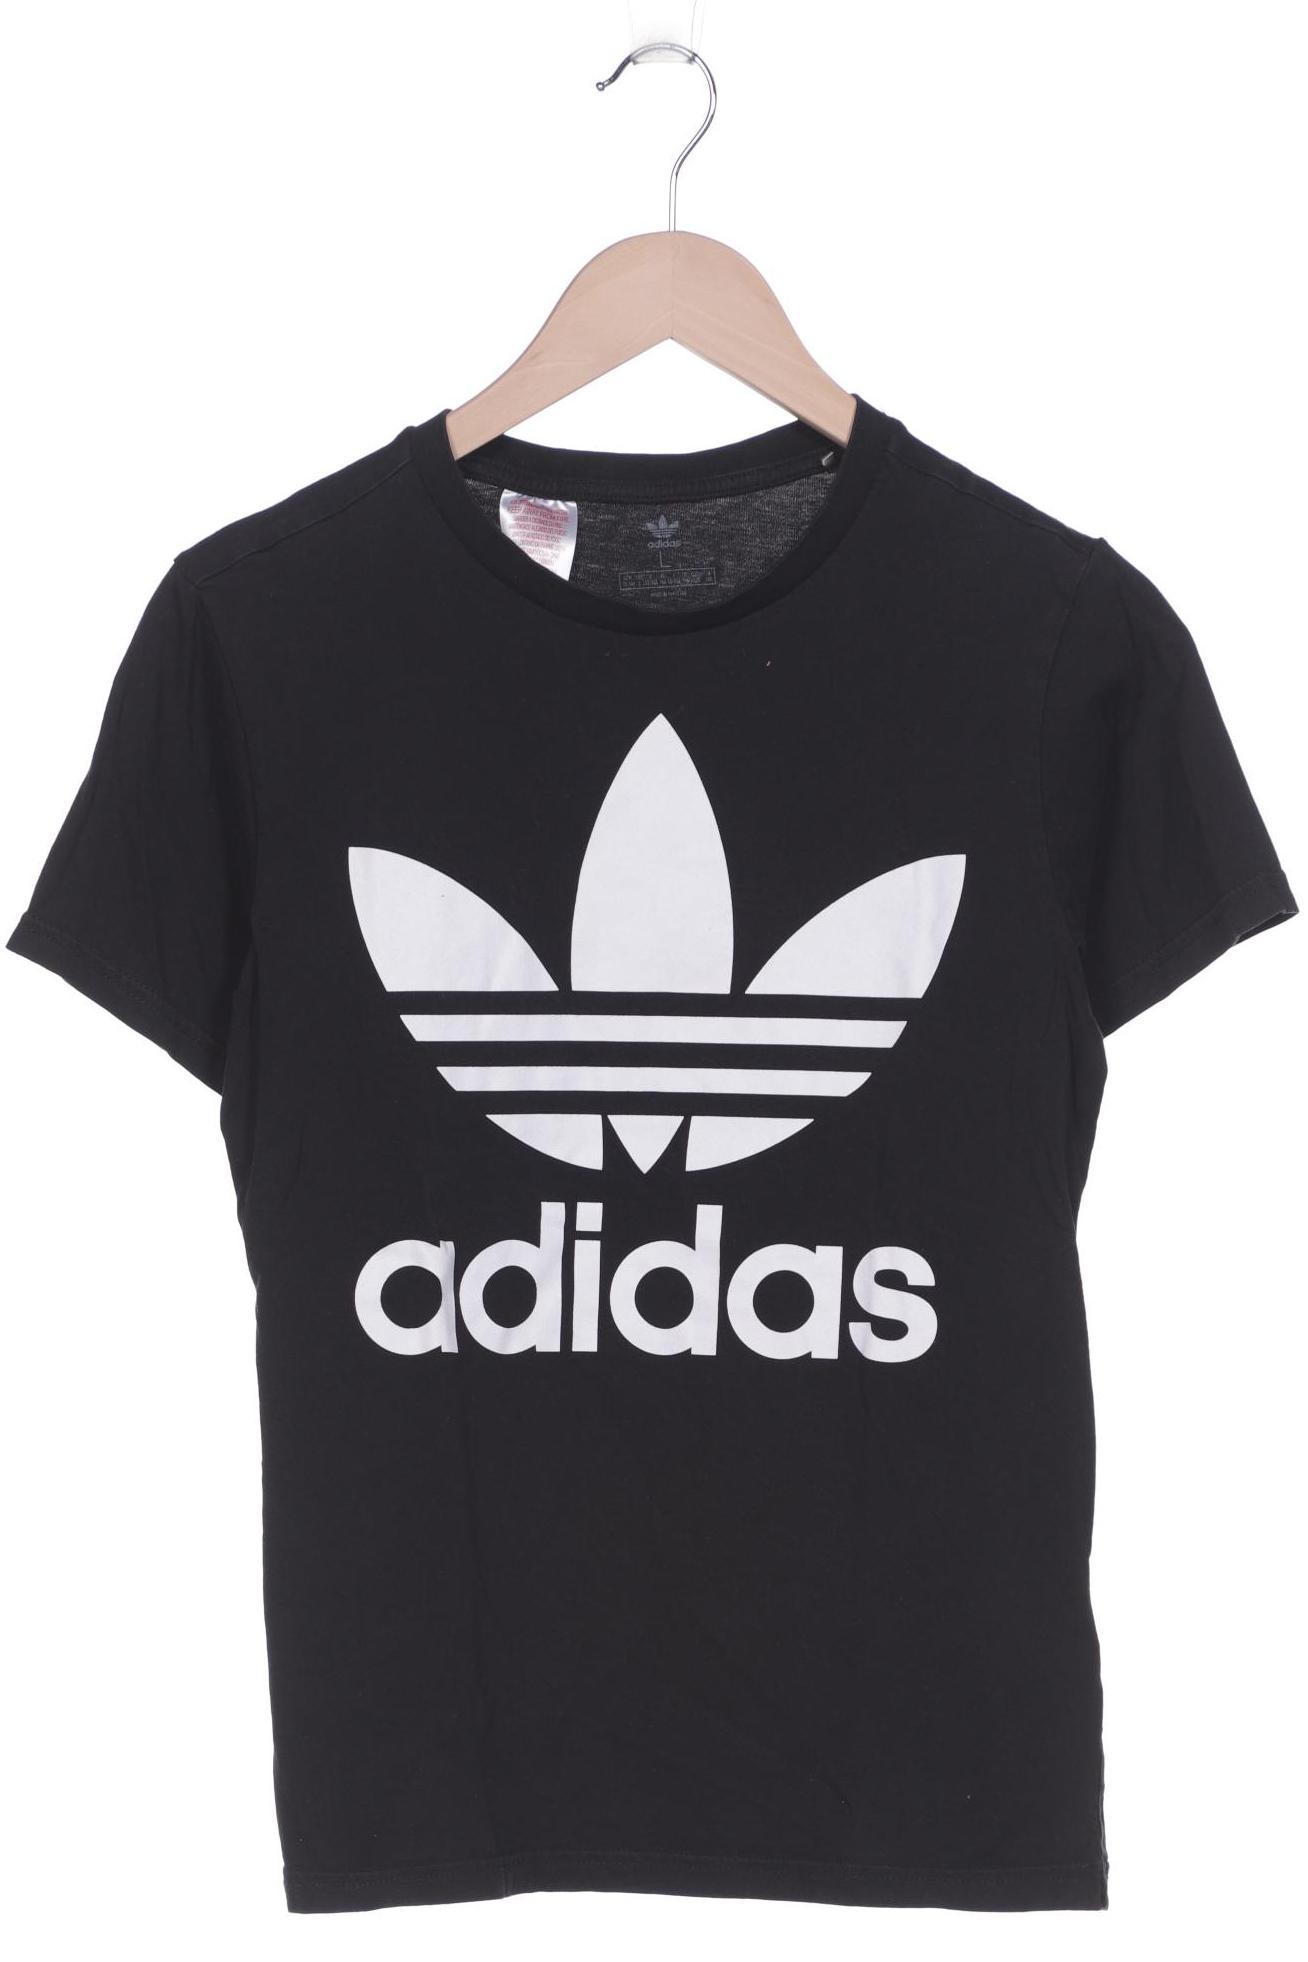 adidas Originals Jungen T-Shirt, schwarz von adidas Originals